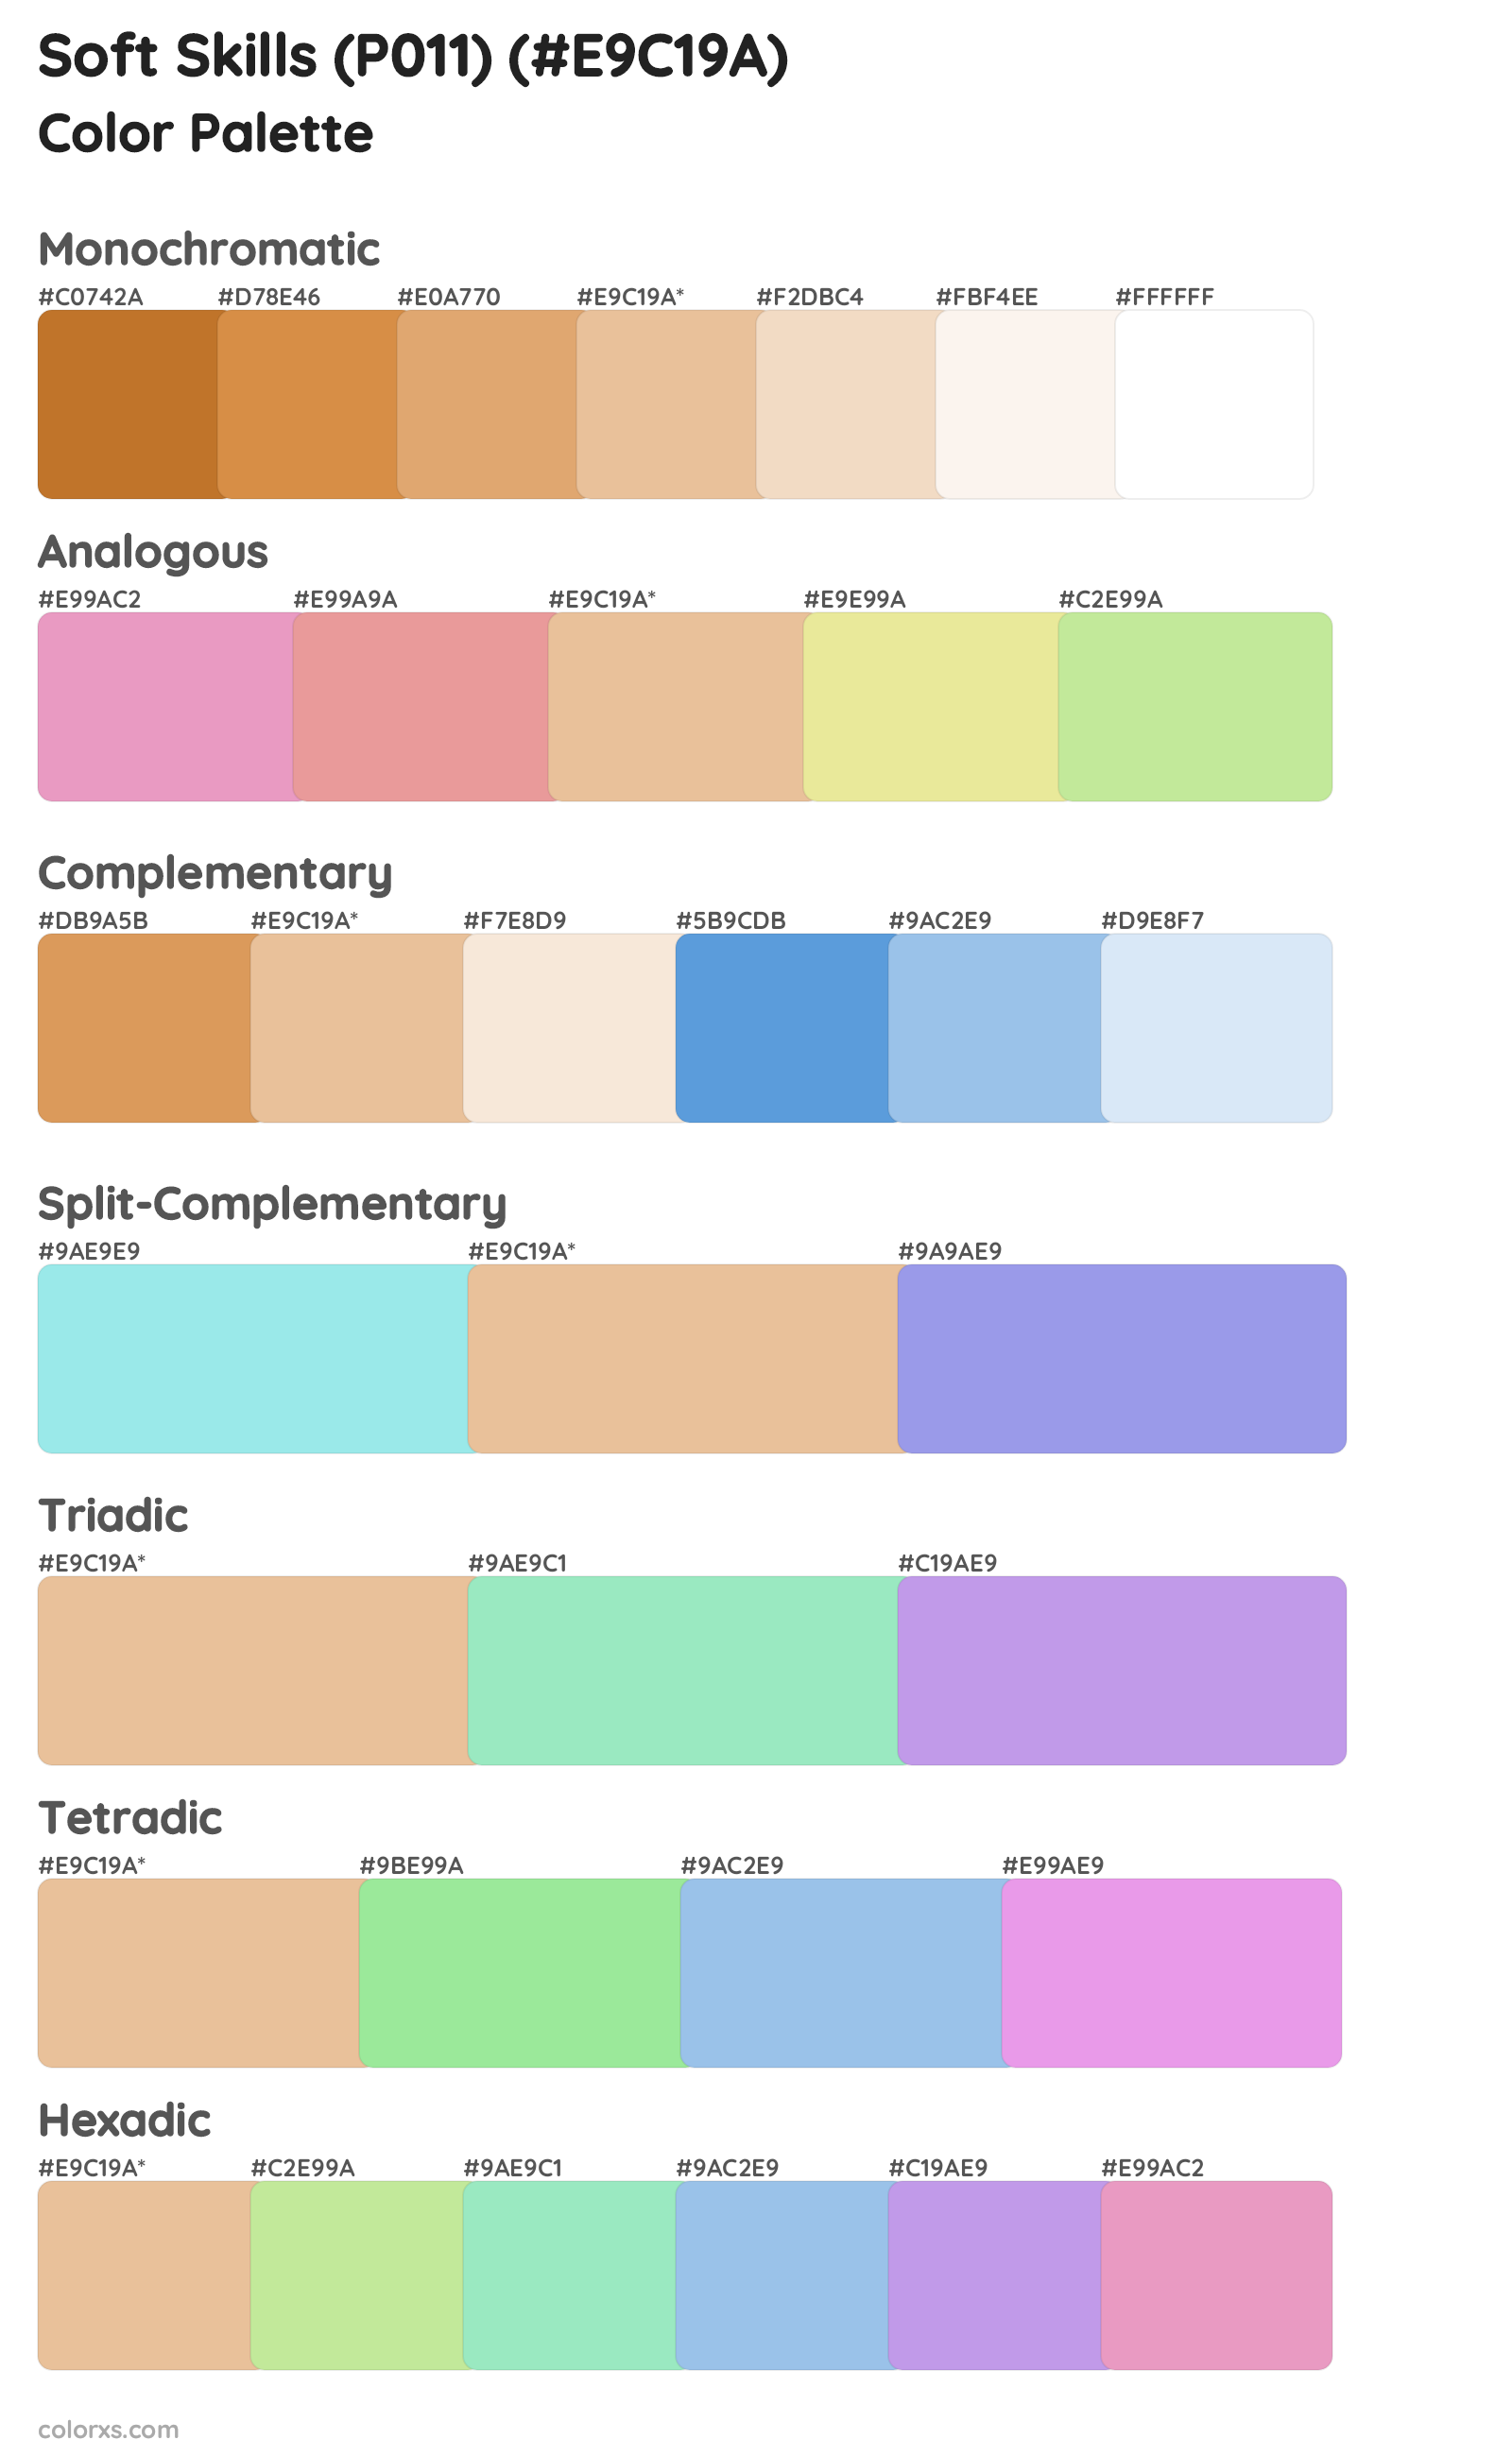 Soft Skills (P011) Color Scheme Palettes